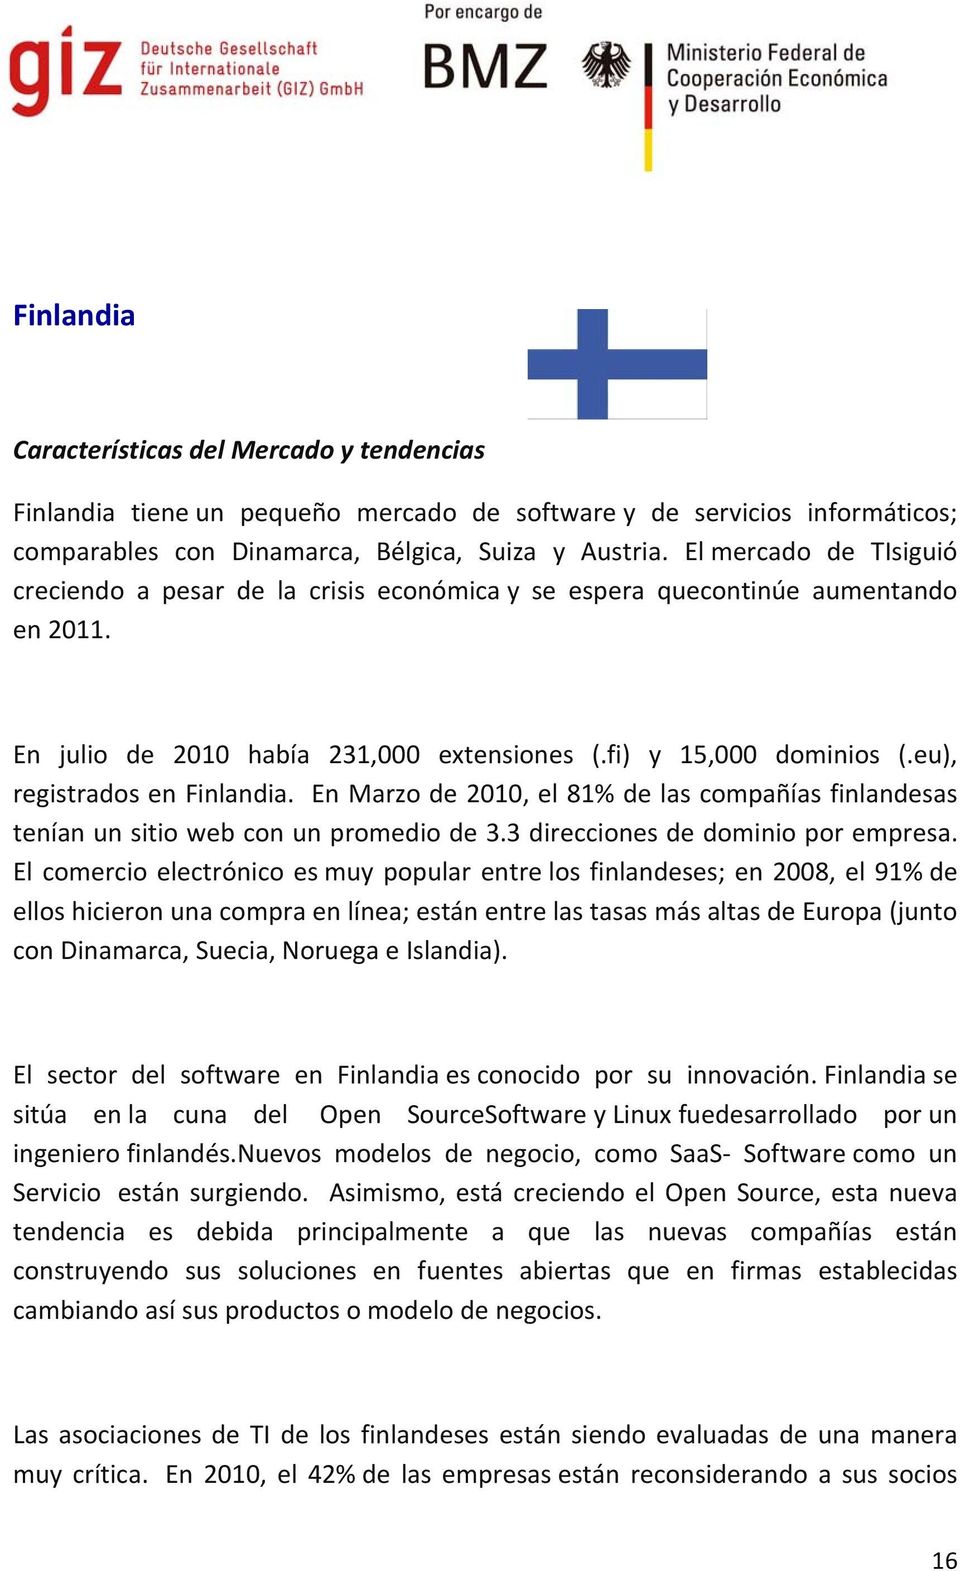 eu), registrados en Finlandia. En Marzo de 2010, el 81% de las compañías finlandesas tenían un sitio web con un promedio de 3.3 direcciones de dominio por empresa.